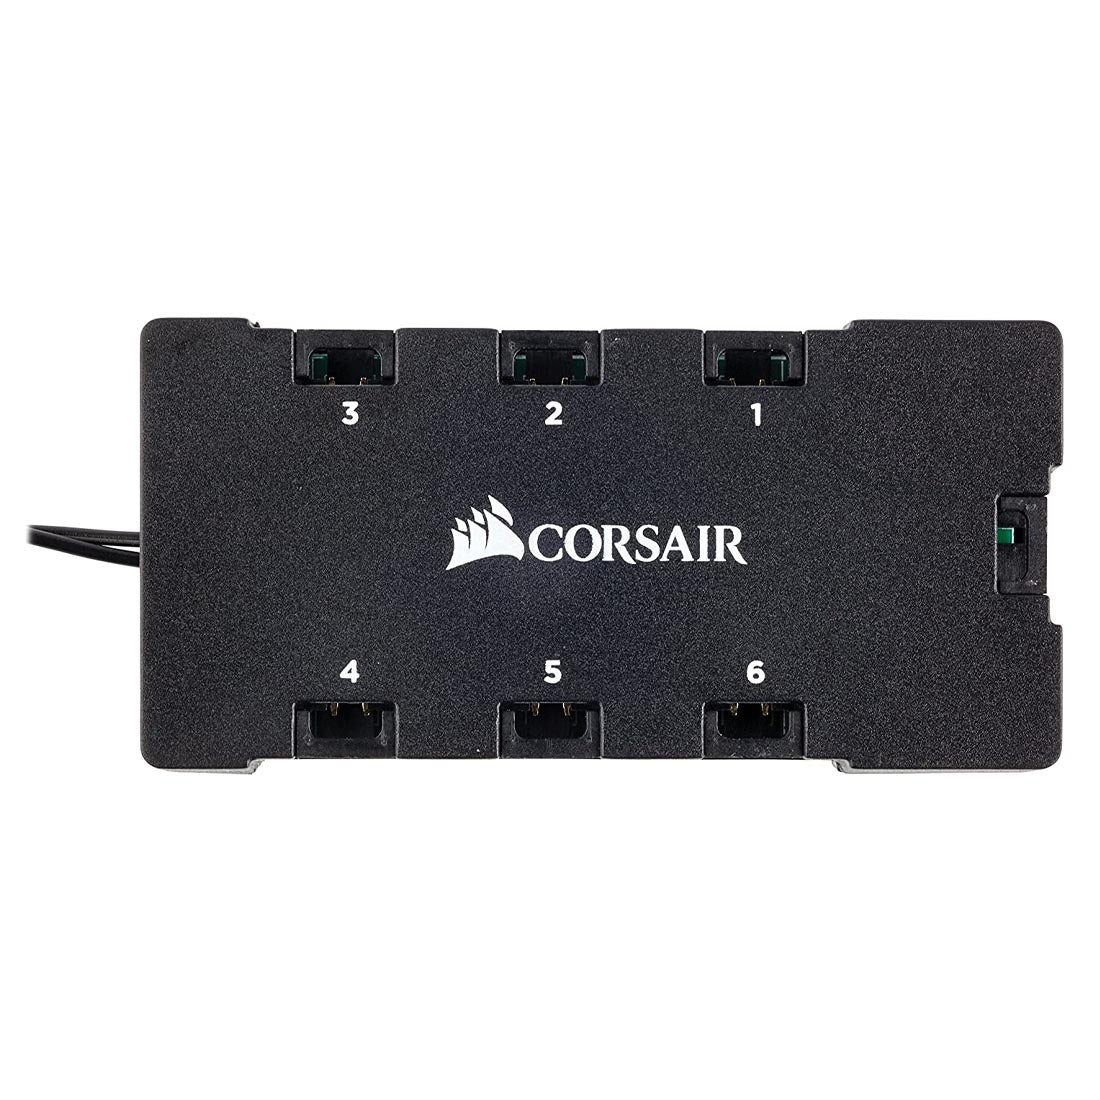 CORSAIR ML120 PRO RGB PWM 3 पैक केस फैन प्रीमियम मैग्नेटिक लेविटेशन के साथ